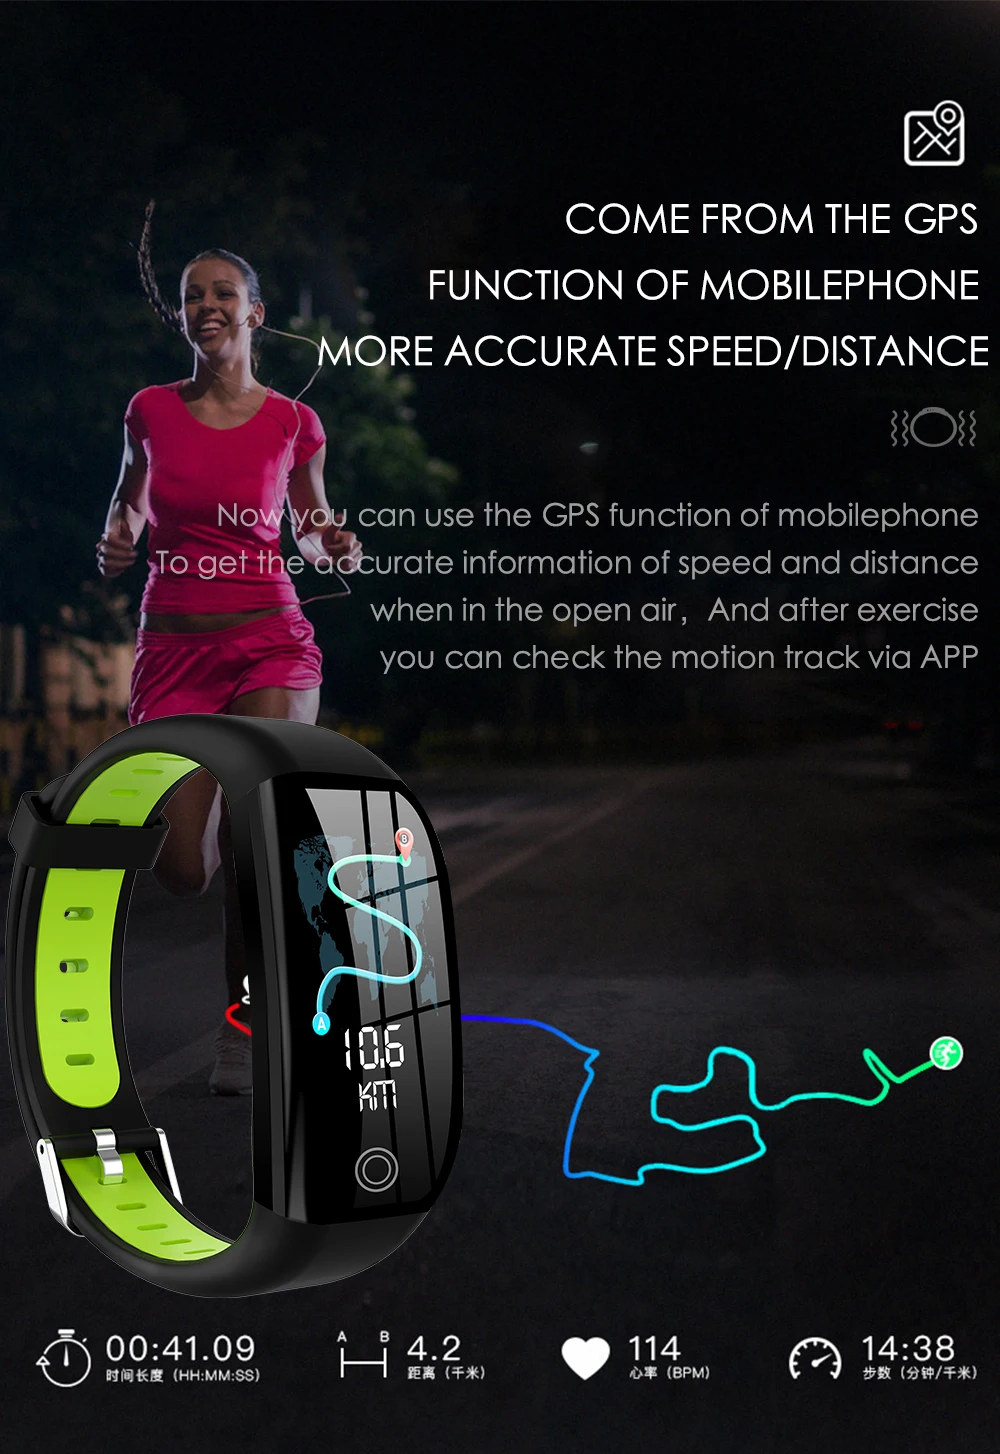 Новый android/ios Bluetooth умный Браслет с контролем артериального давления спортивный наручный браслет часы